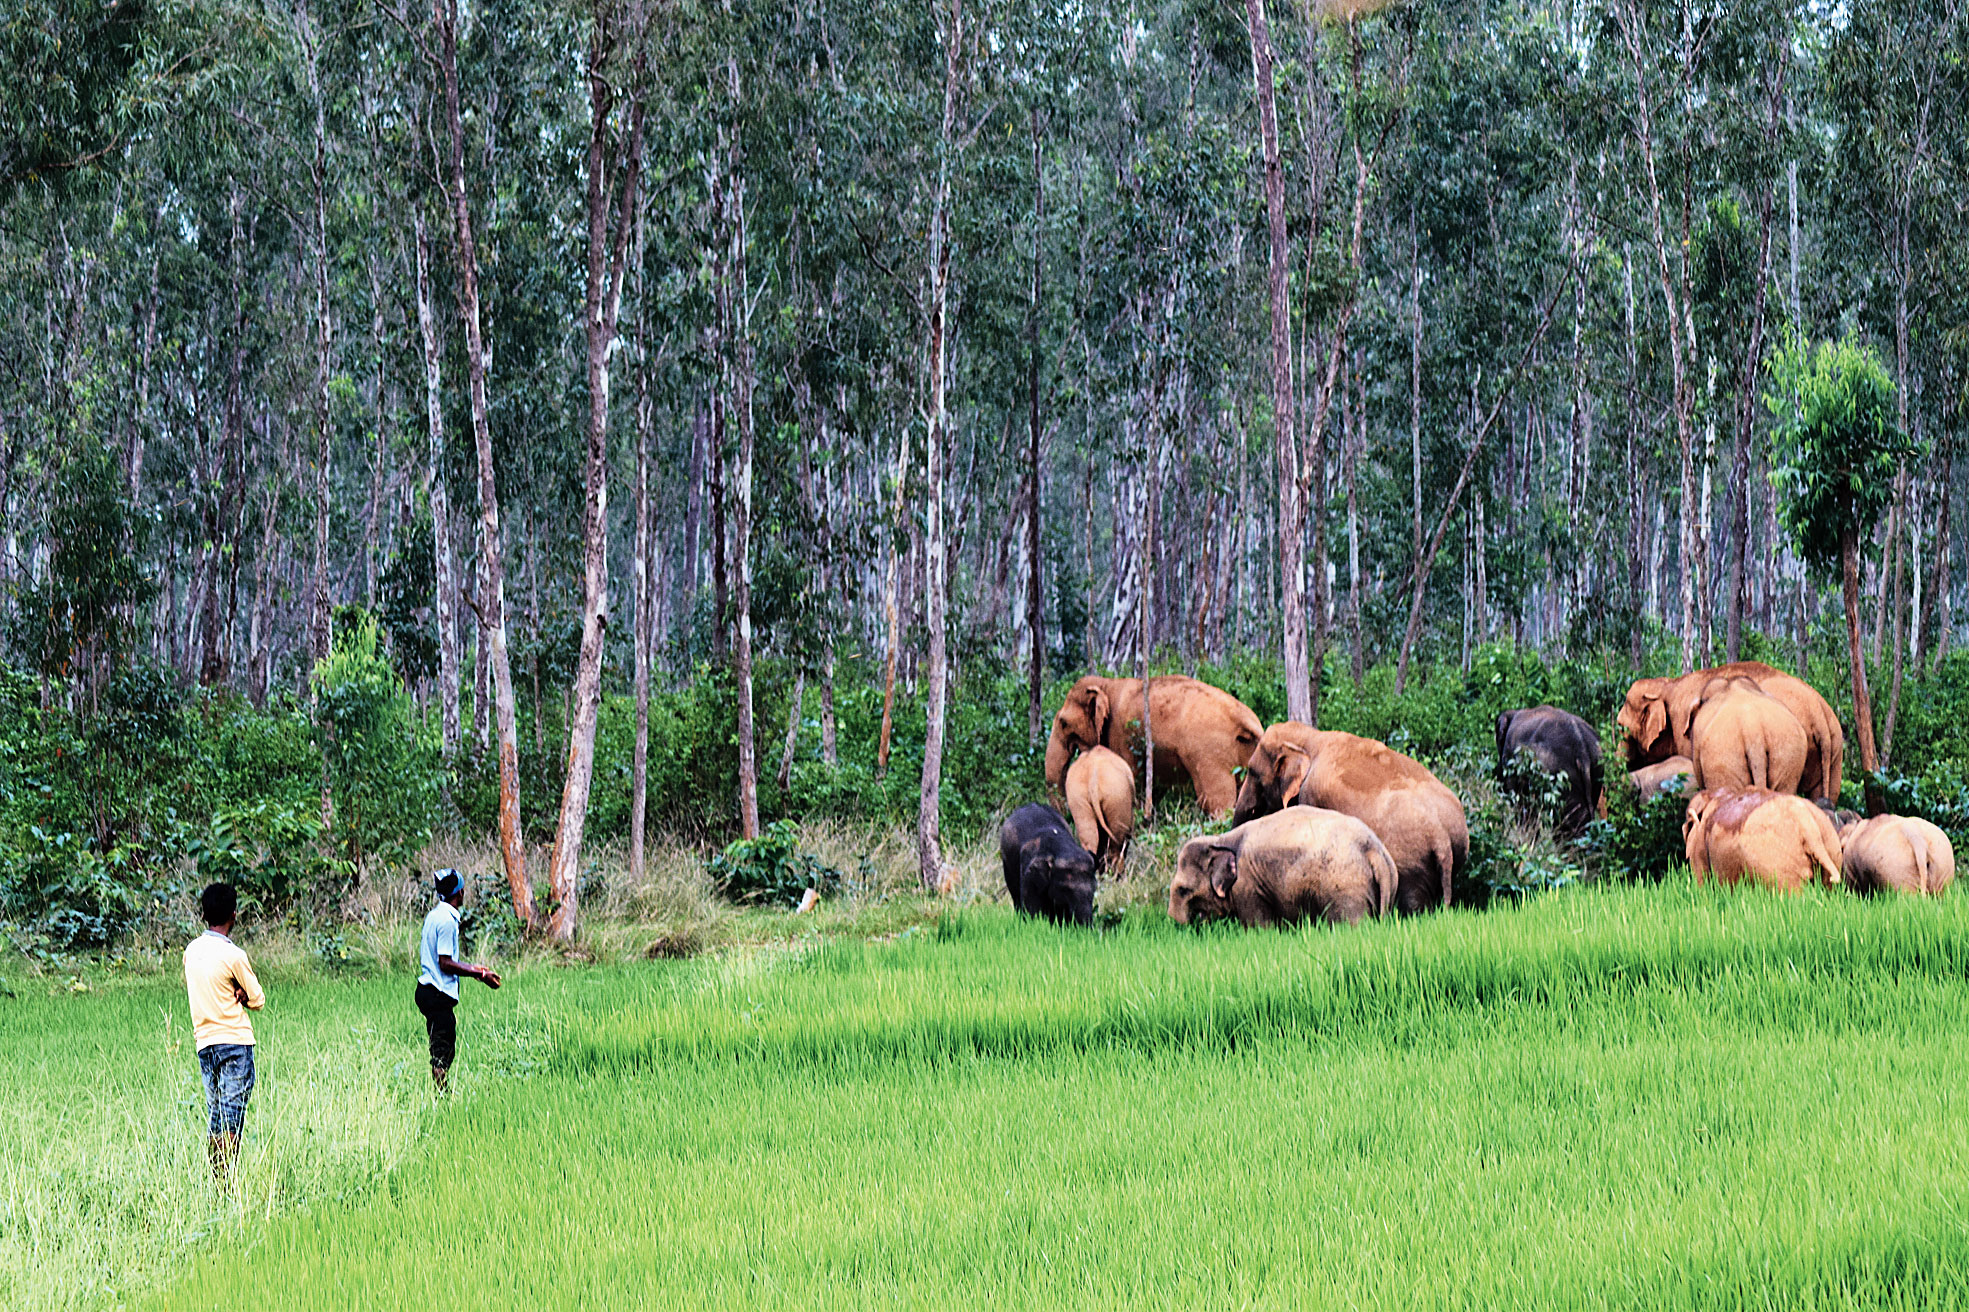 The herd of elephants in Keonjhar. 